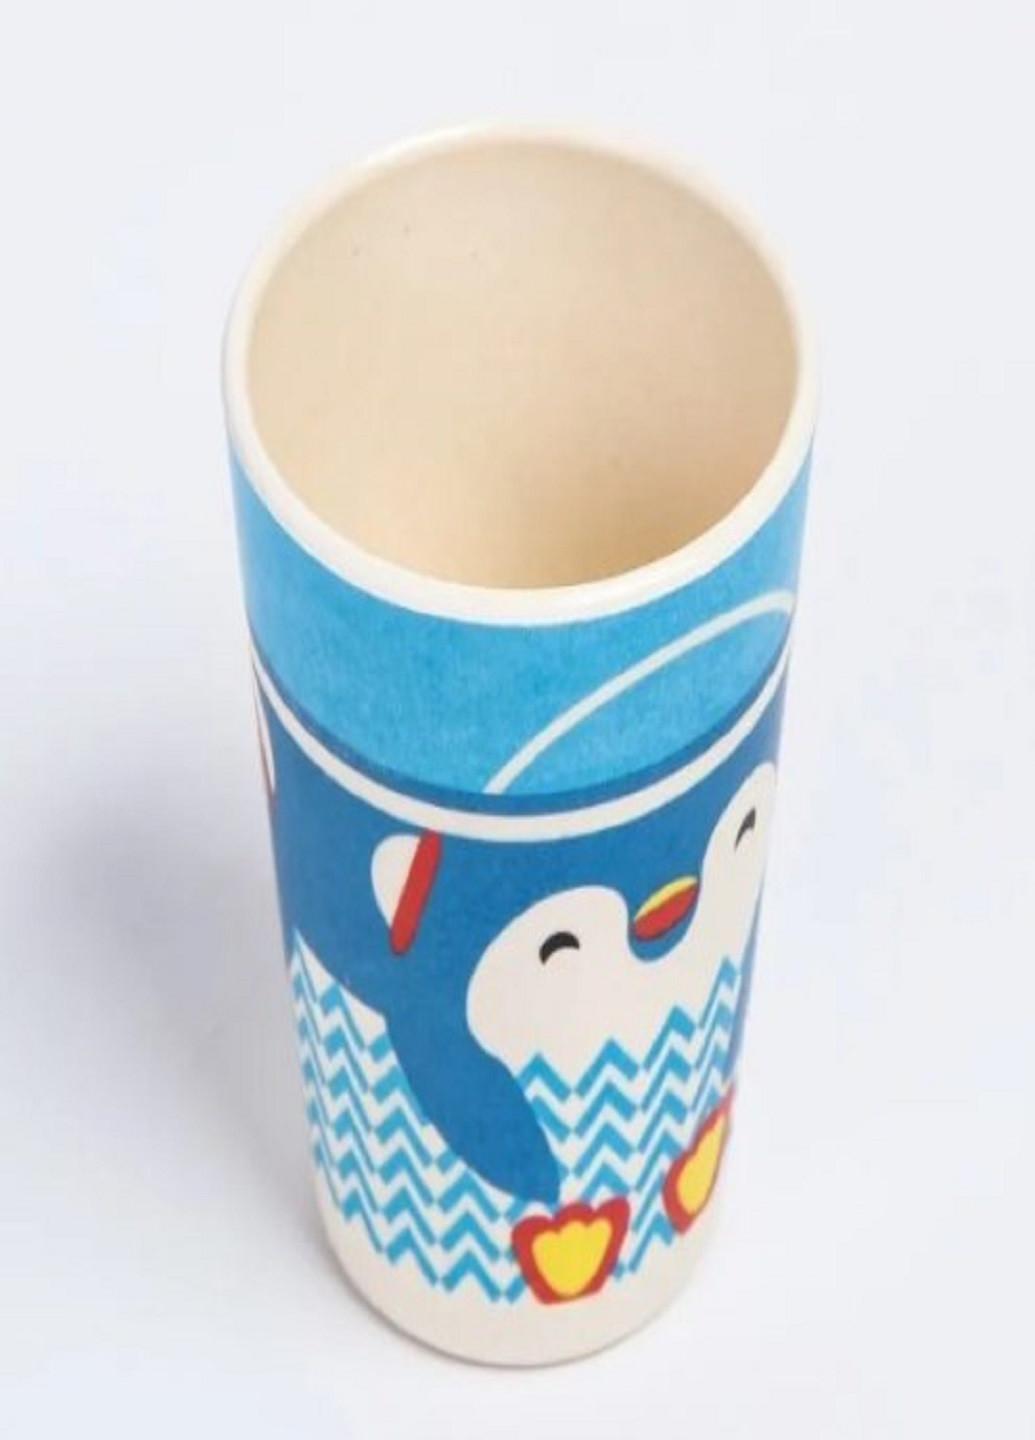 Бамбуковый набор детской посуды ECO friendly product 5 предметов пингвин синий VTech (263360251)